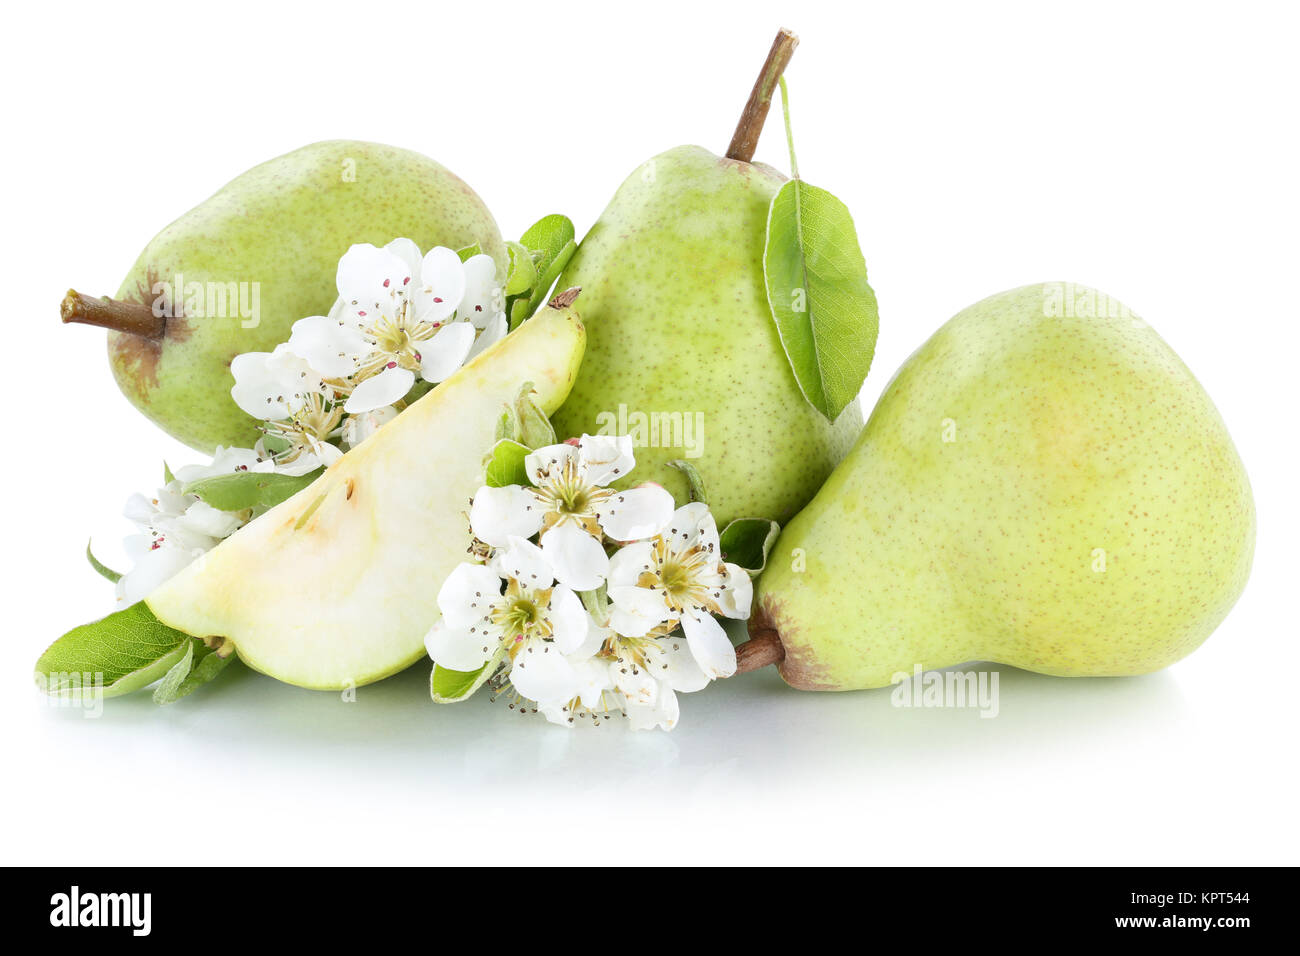 Birnen Birne grün frische Frucht Früchte Obst Freisteller freigestellt isoliert vor einem weissen Hintergrund Stock Photo